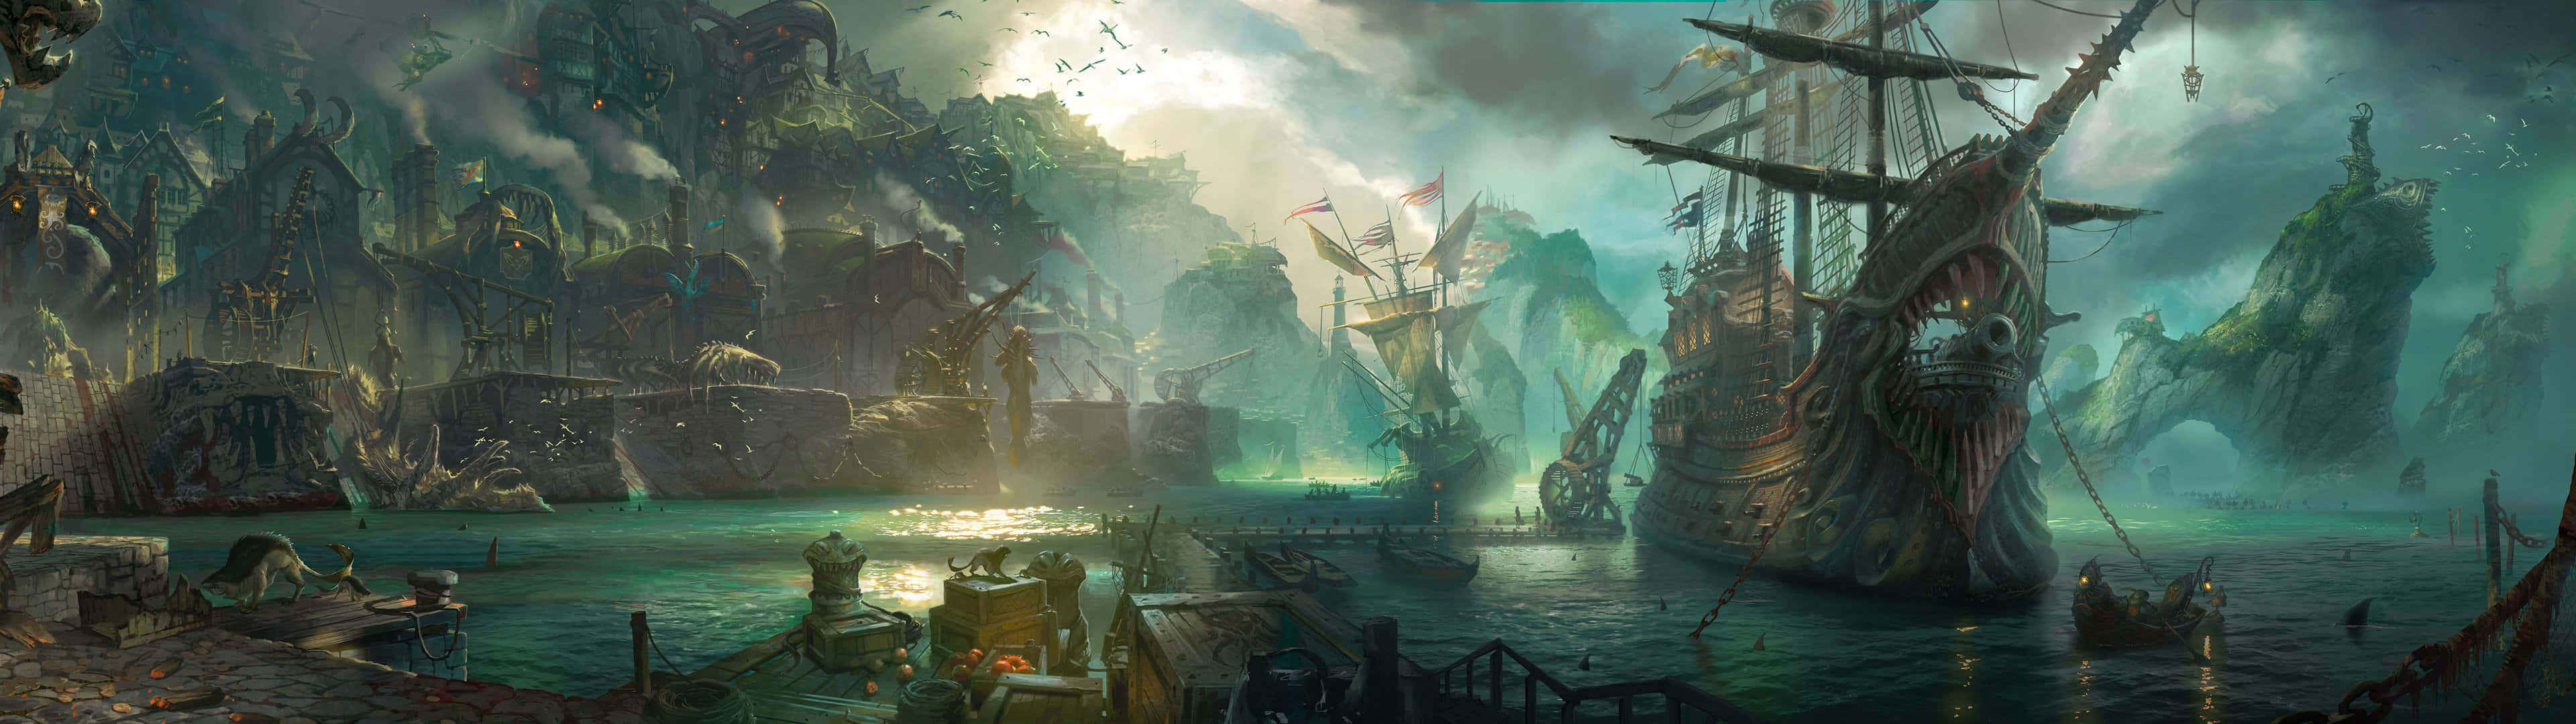 Tadin League Of Legends Spelupplevelse Till Nästa Nivå Med Dual Screen Gaming! Wallpaper